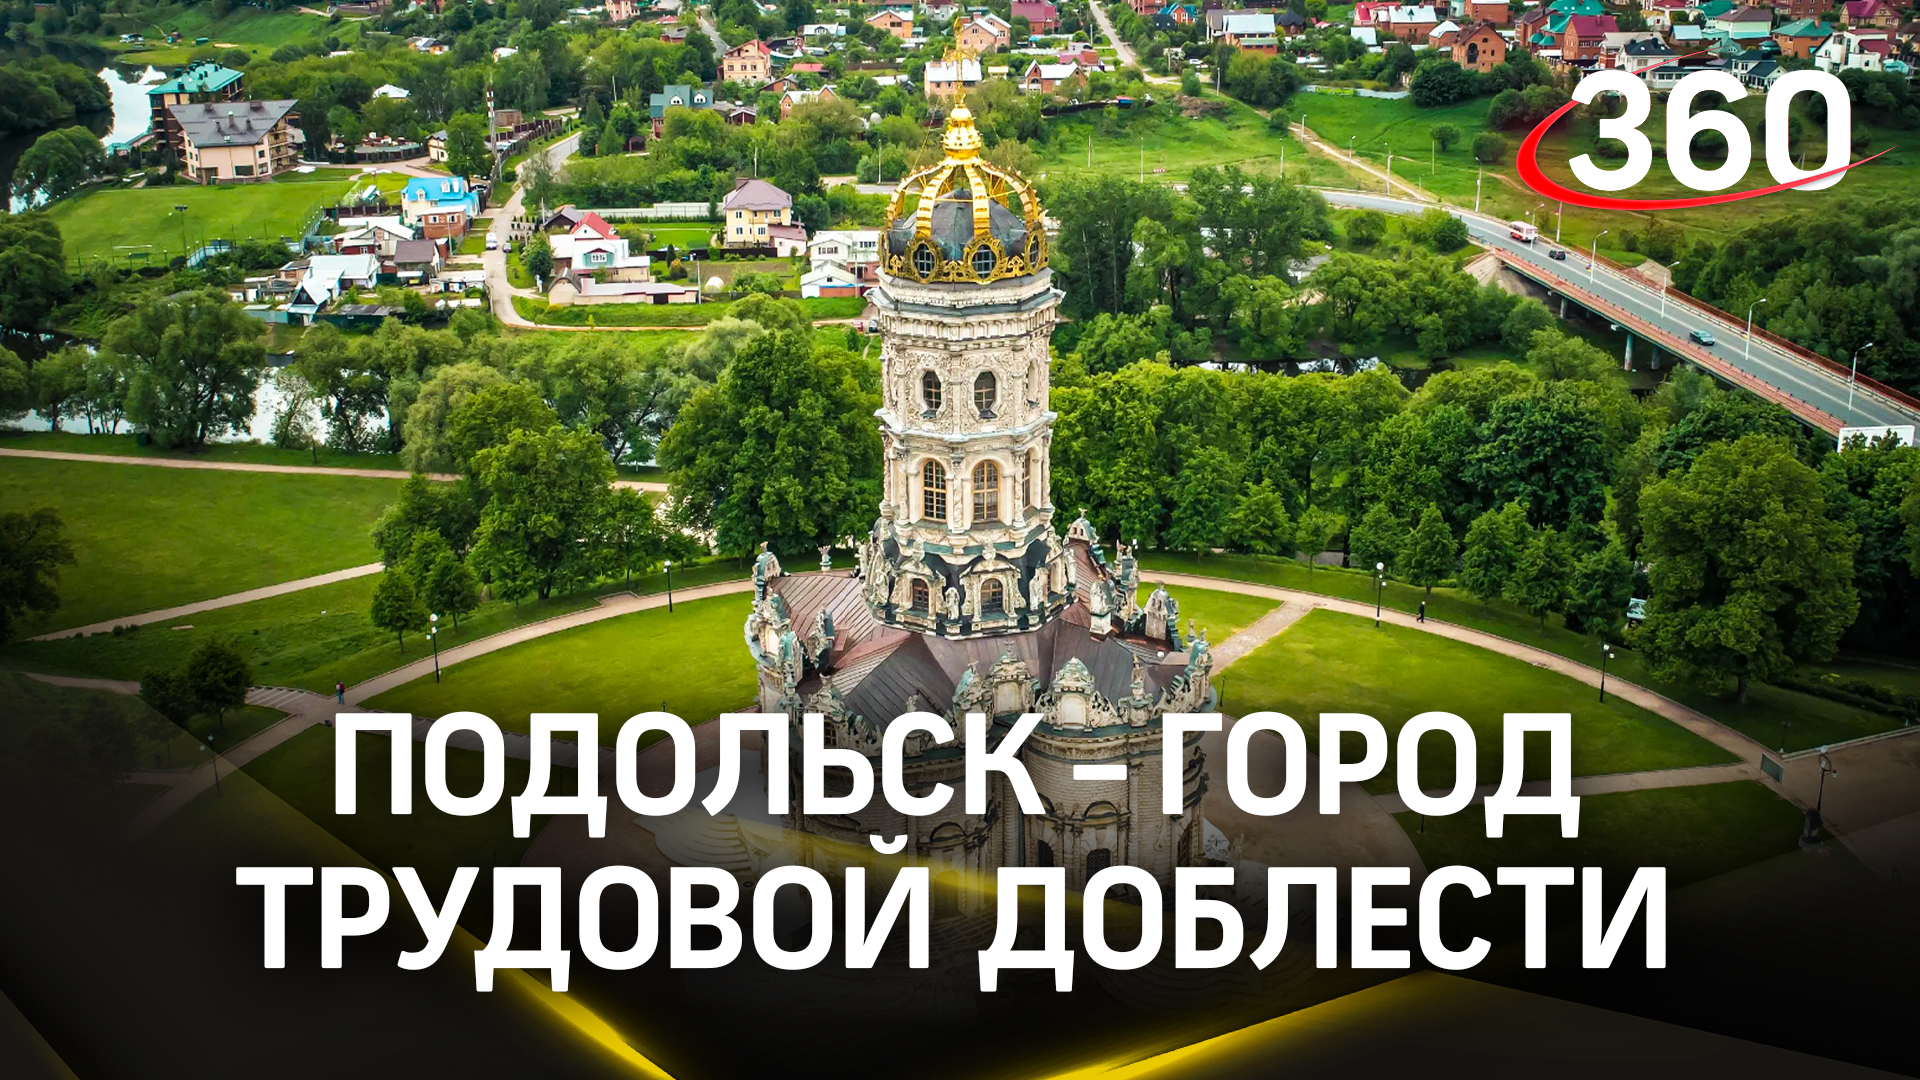 Подольск стал Городом трудовой доблести: Путин подписал указ о присвоении этого почетного звания